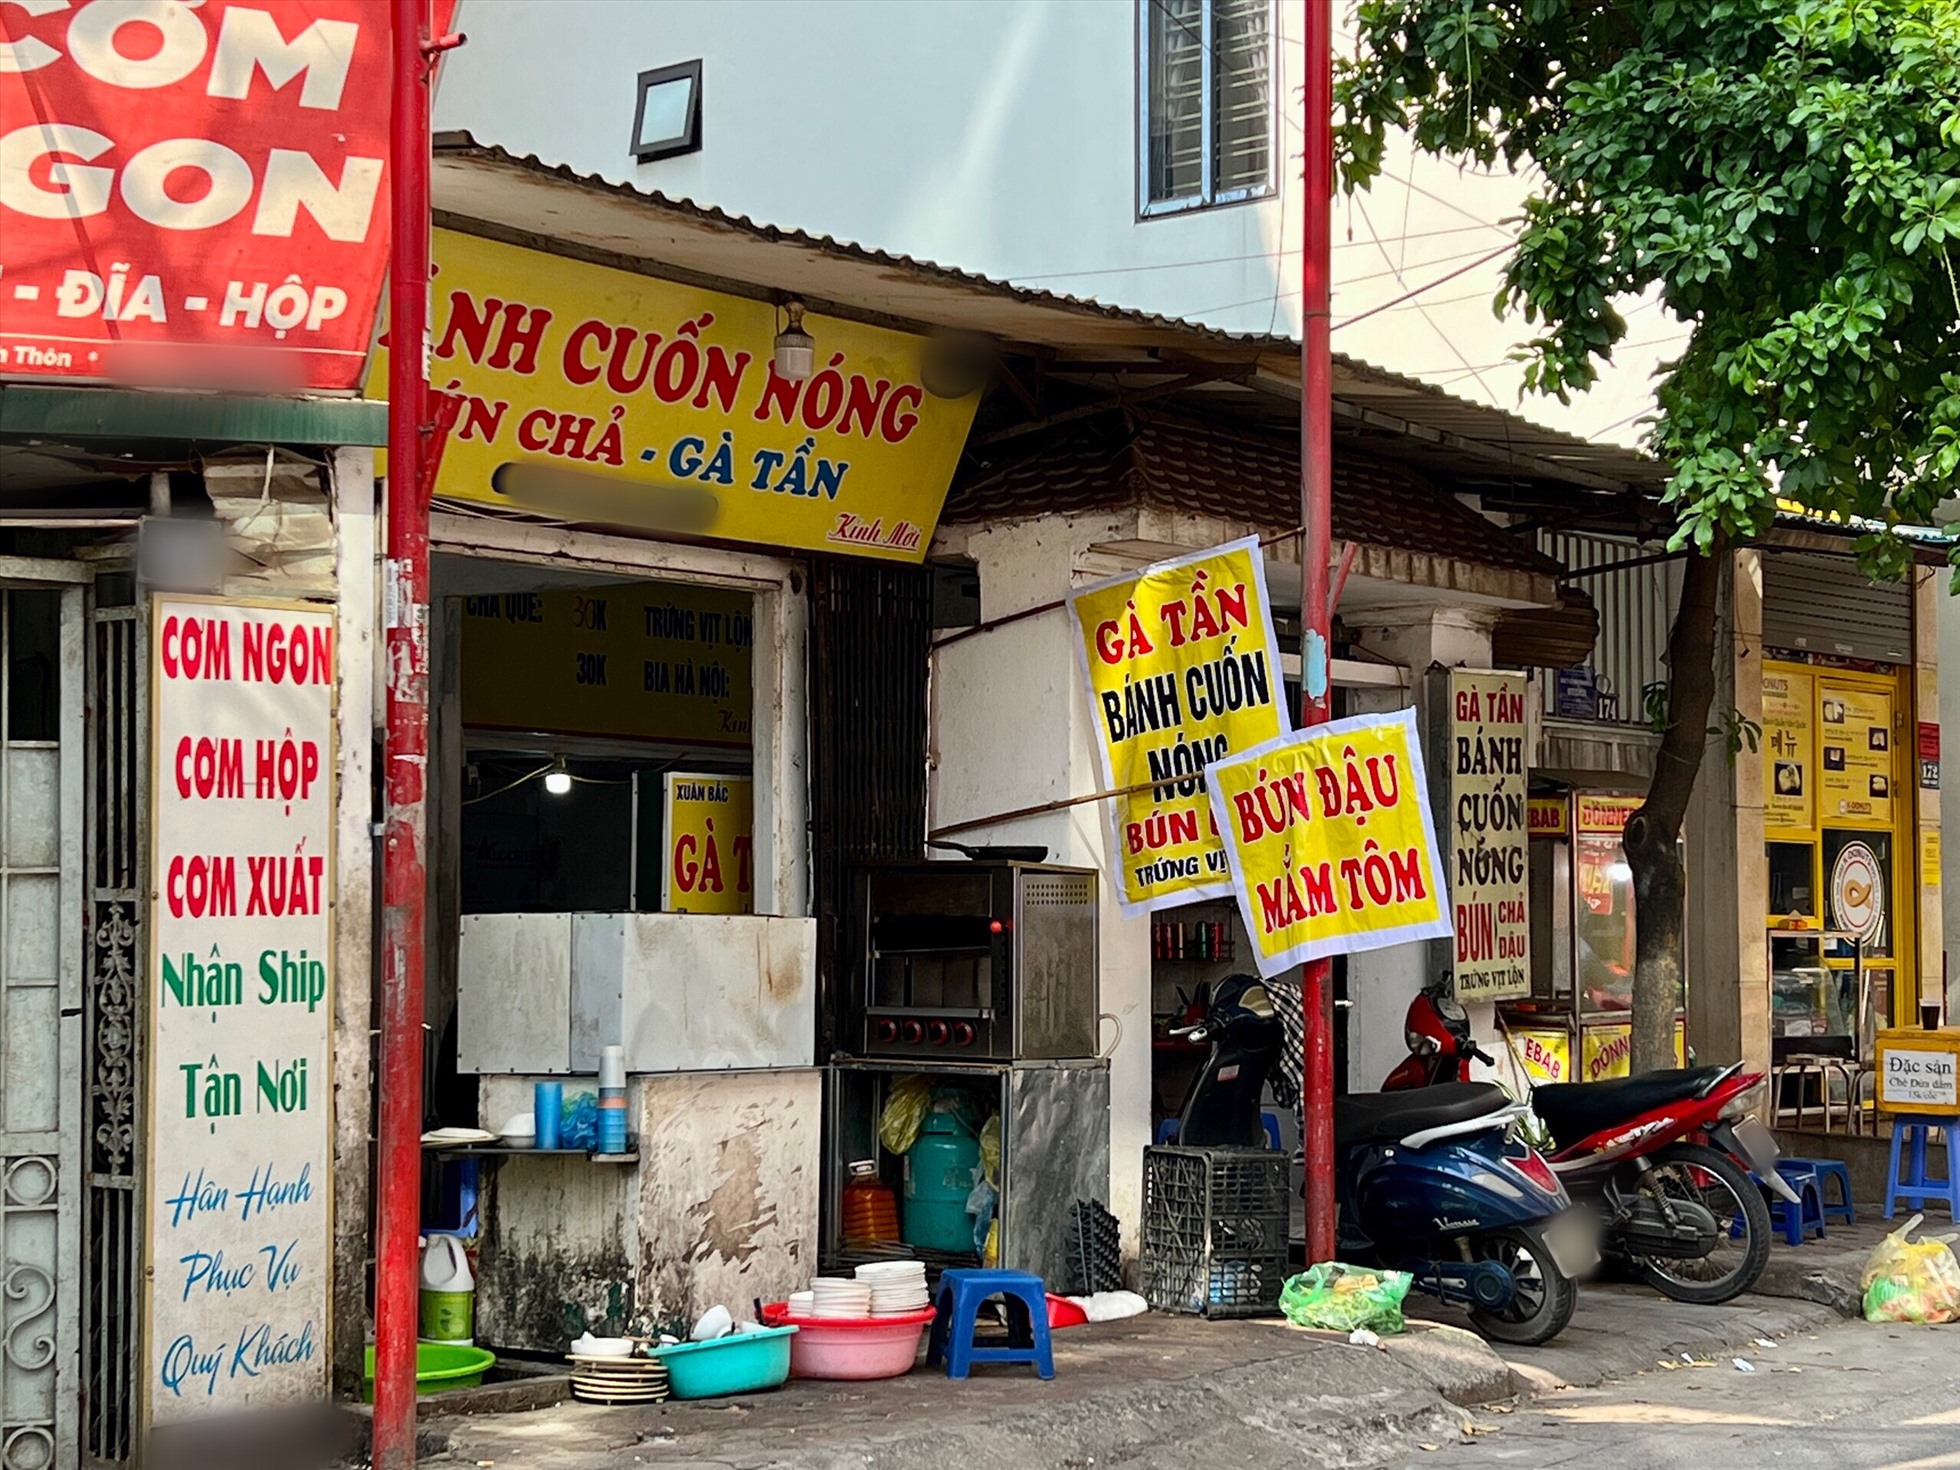 Nhiều cửa hàng thậm chí còn tự bắt vít, hàn giá đỡ để treo biển phụ. Ảnh: Nguyễn Thúy.